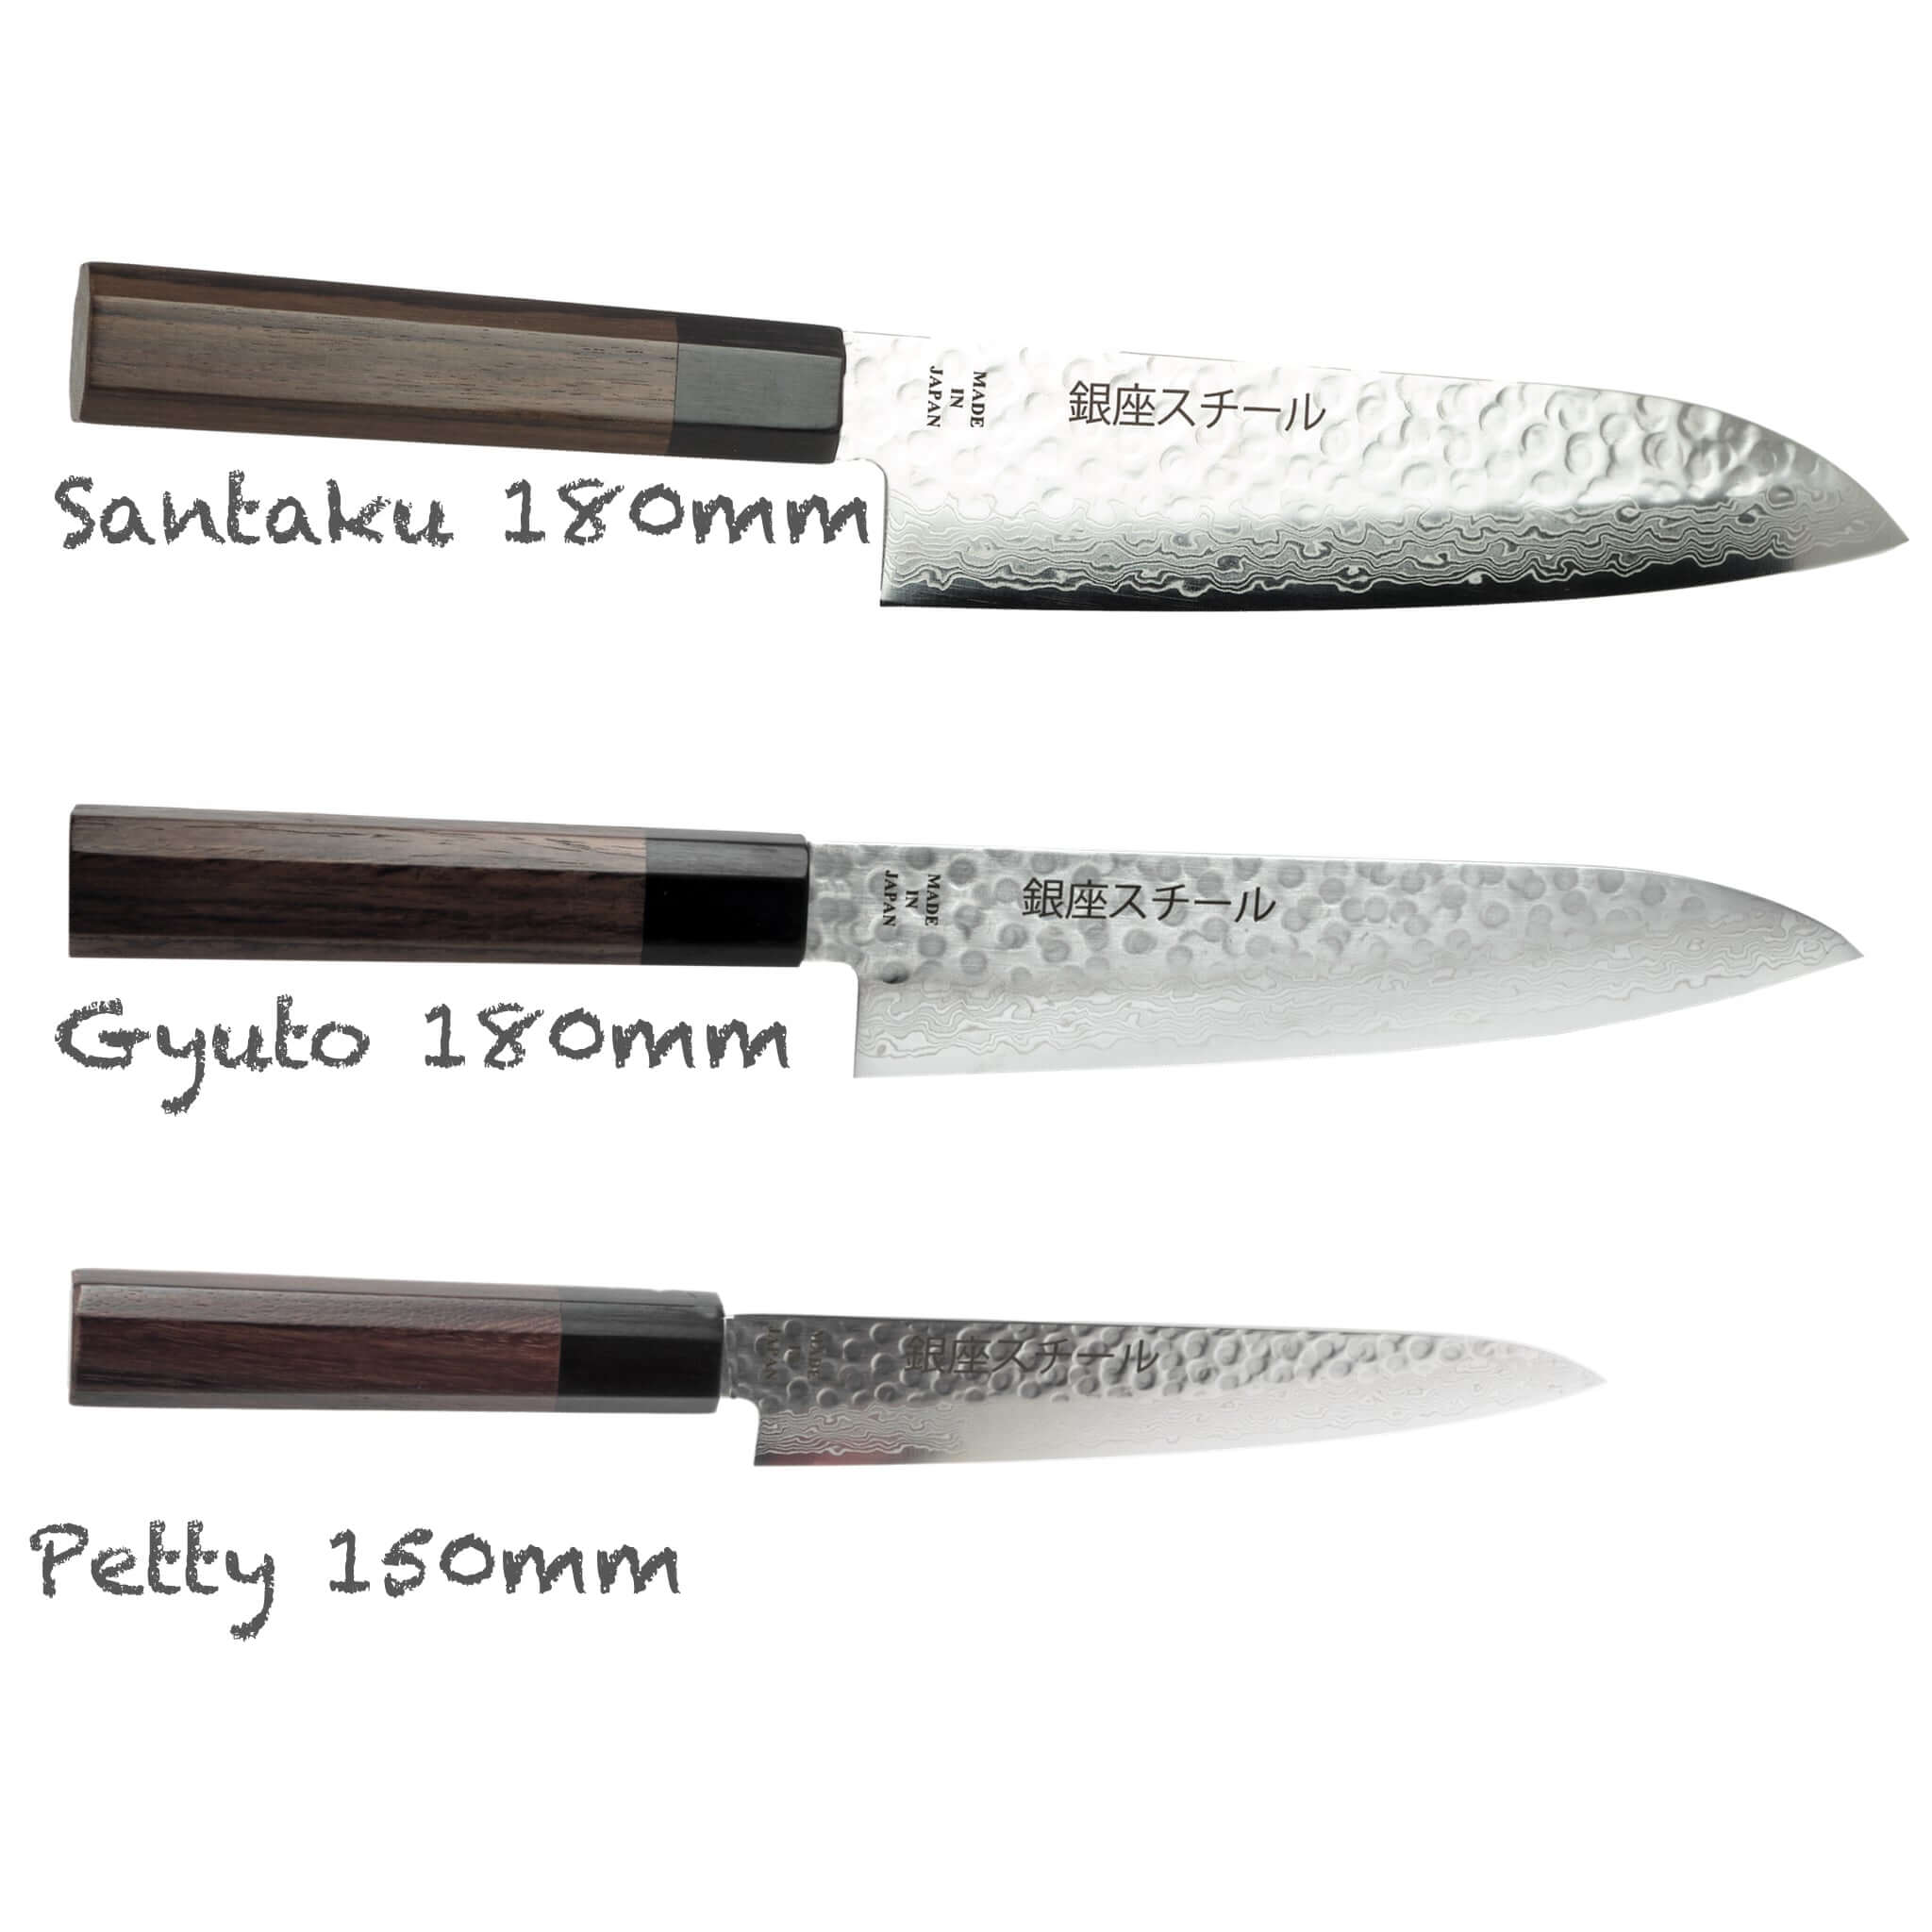 essential knife set, top 10 knife set, best knife set